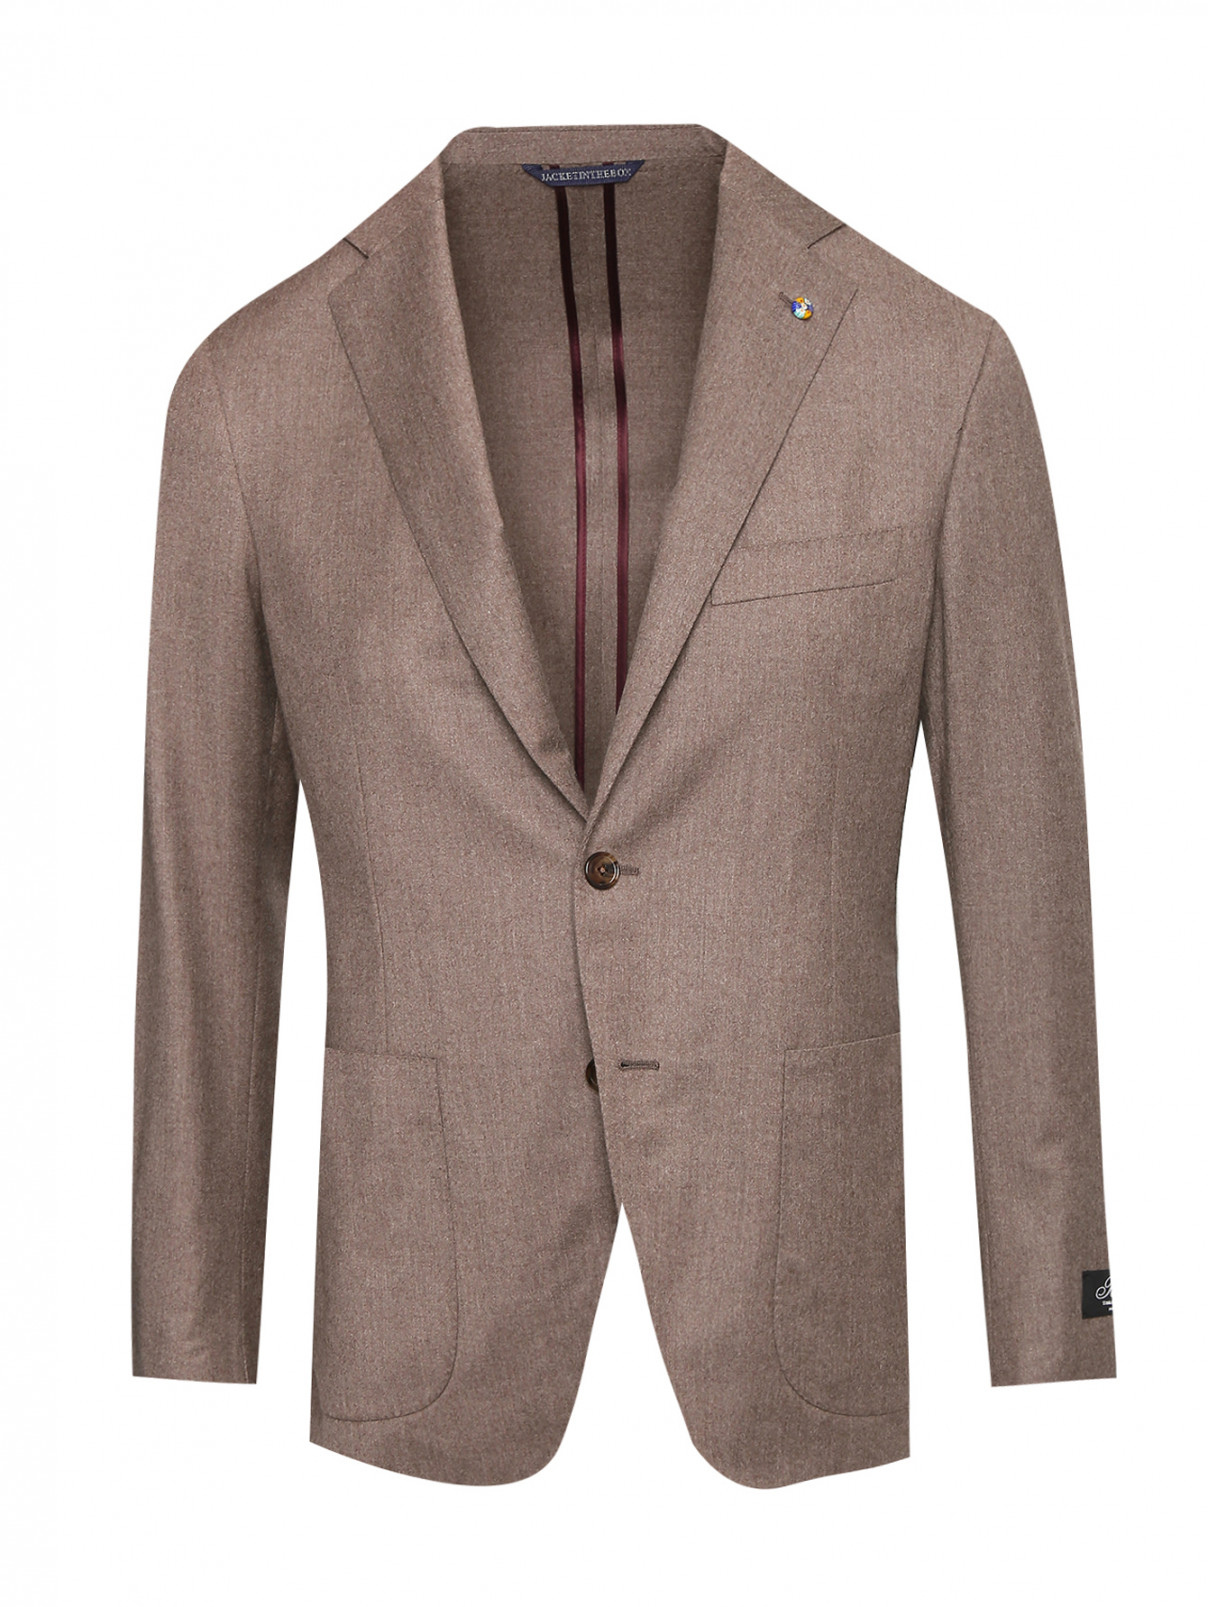 Пиджак из шерсти и шелка с карманами Belvest  –  Общий вид  – Цвет:  Бежевый